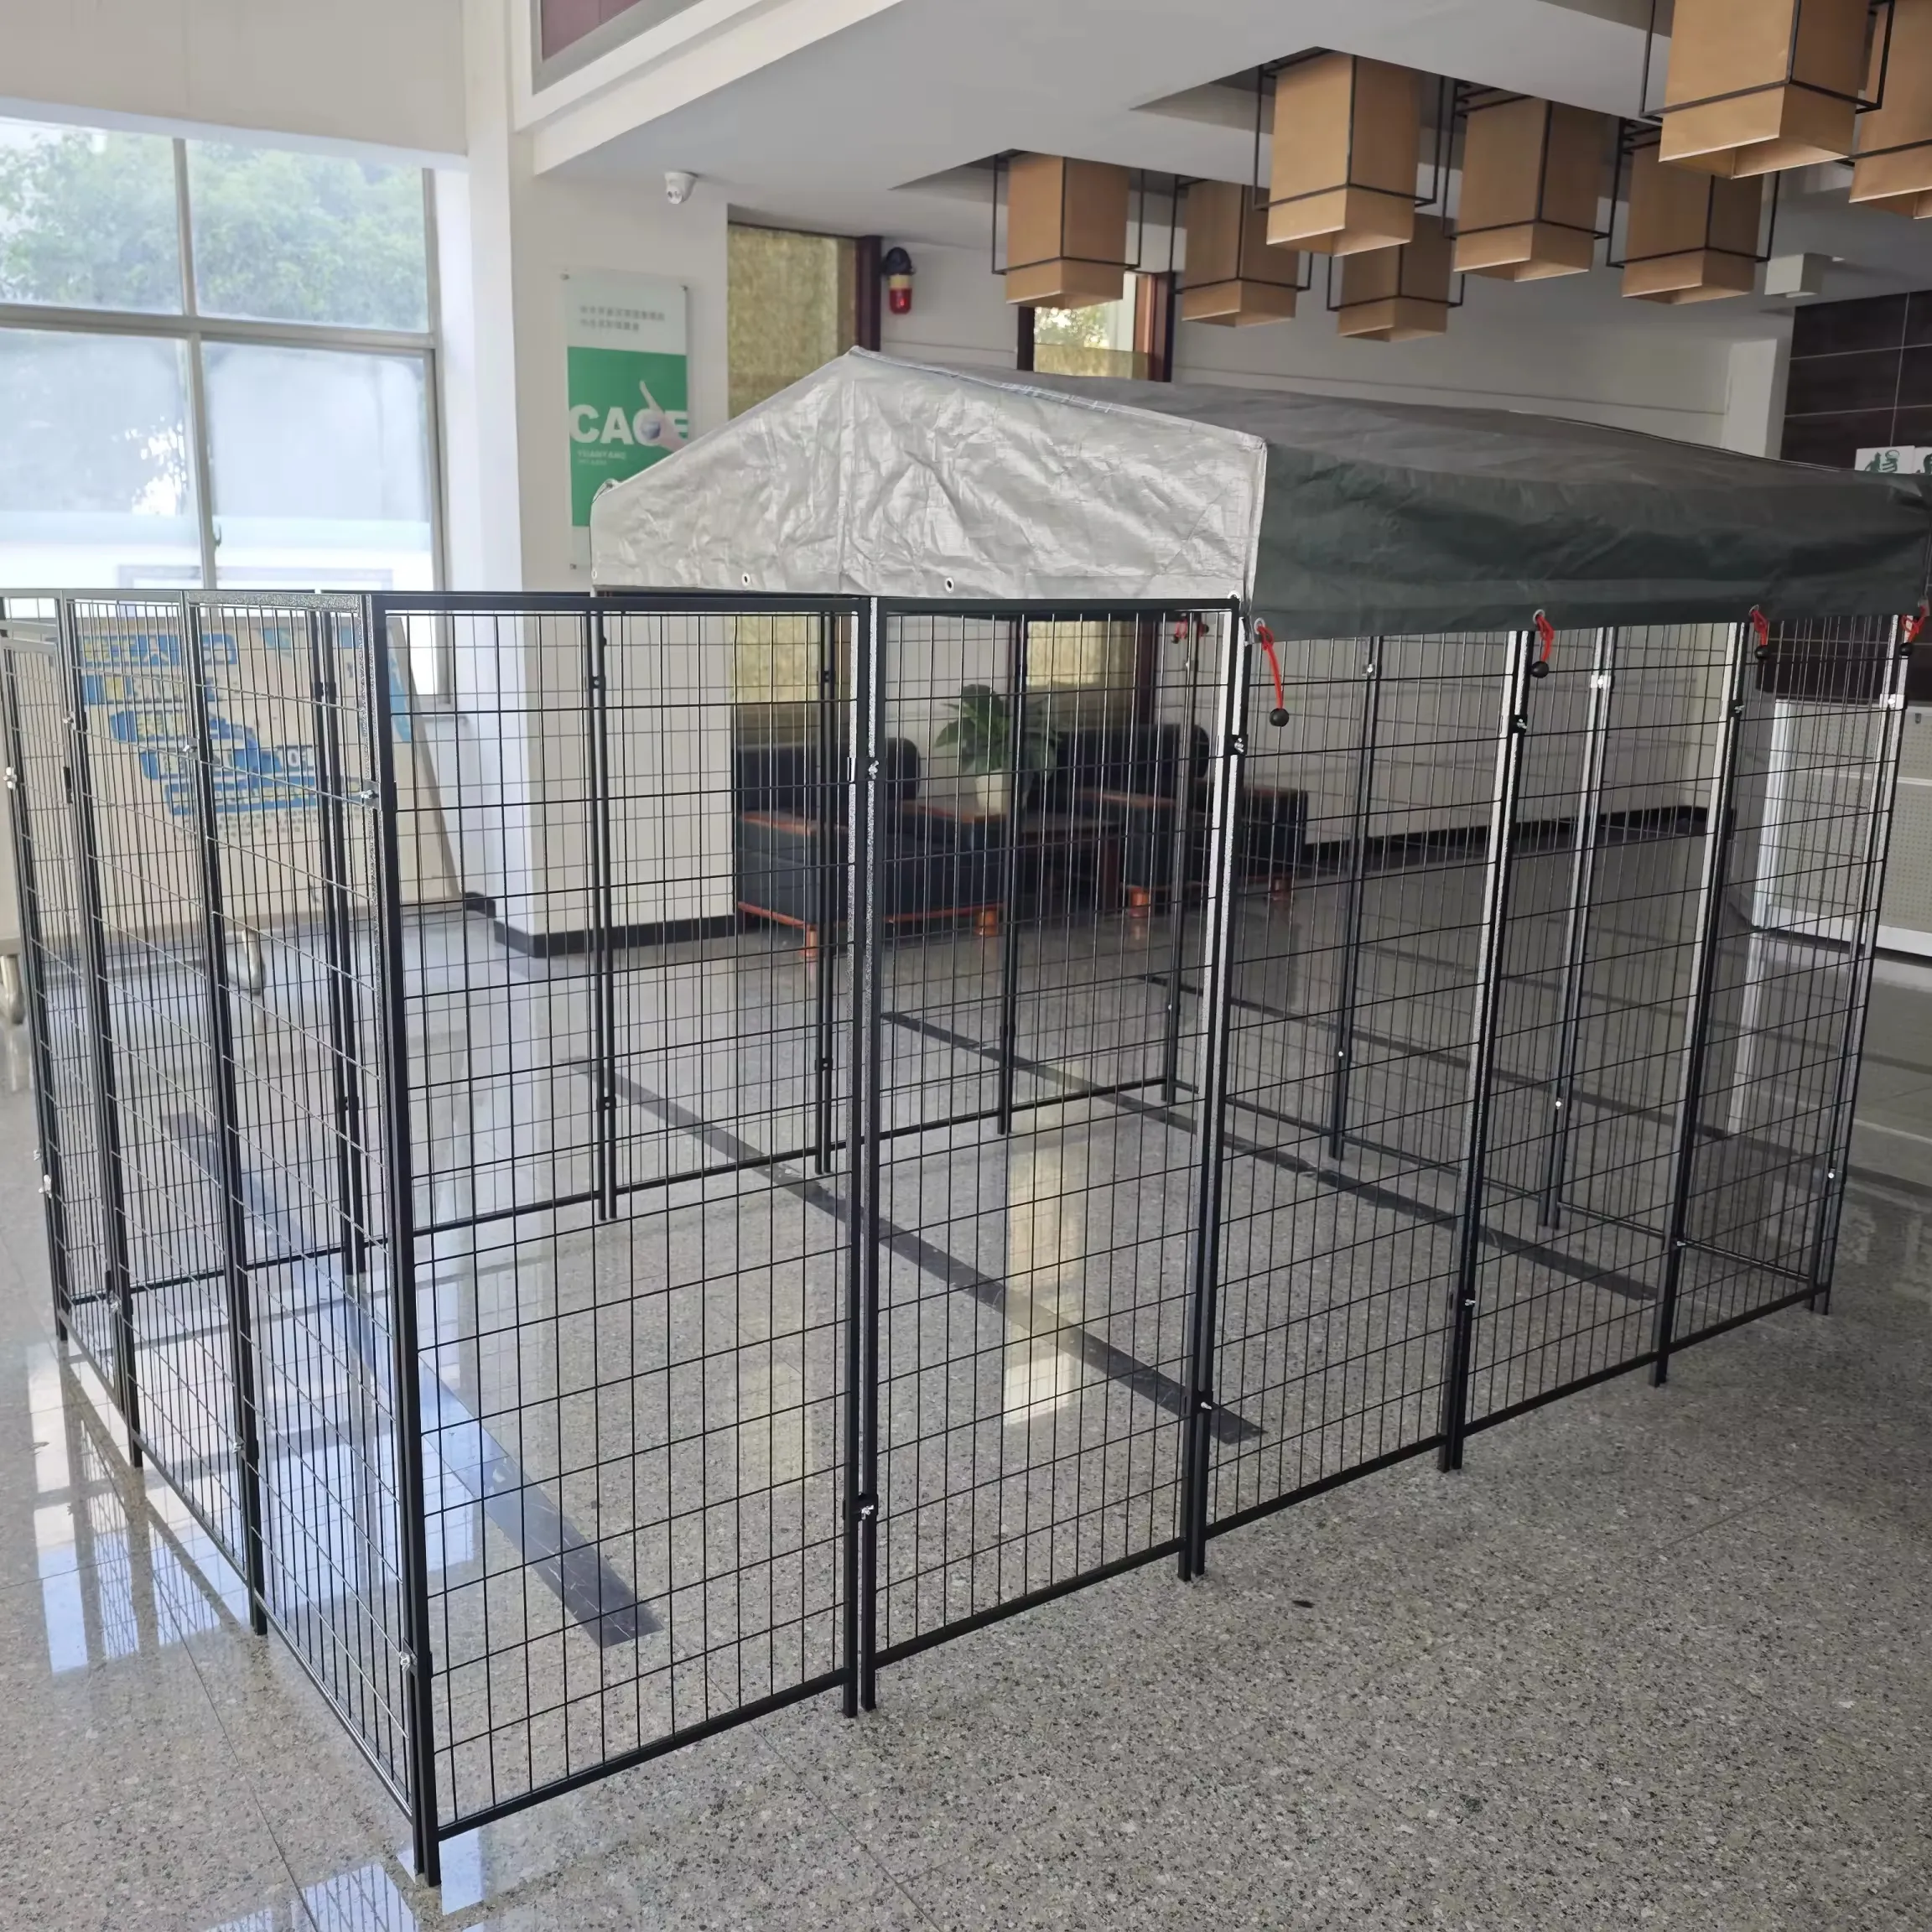 Cuccia per gabbia per cani di grandi dimensioni in rete metallica resistente per esterni con parte superiore impermeabile e parasole per giardino agricolo